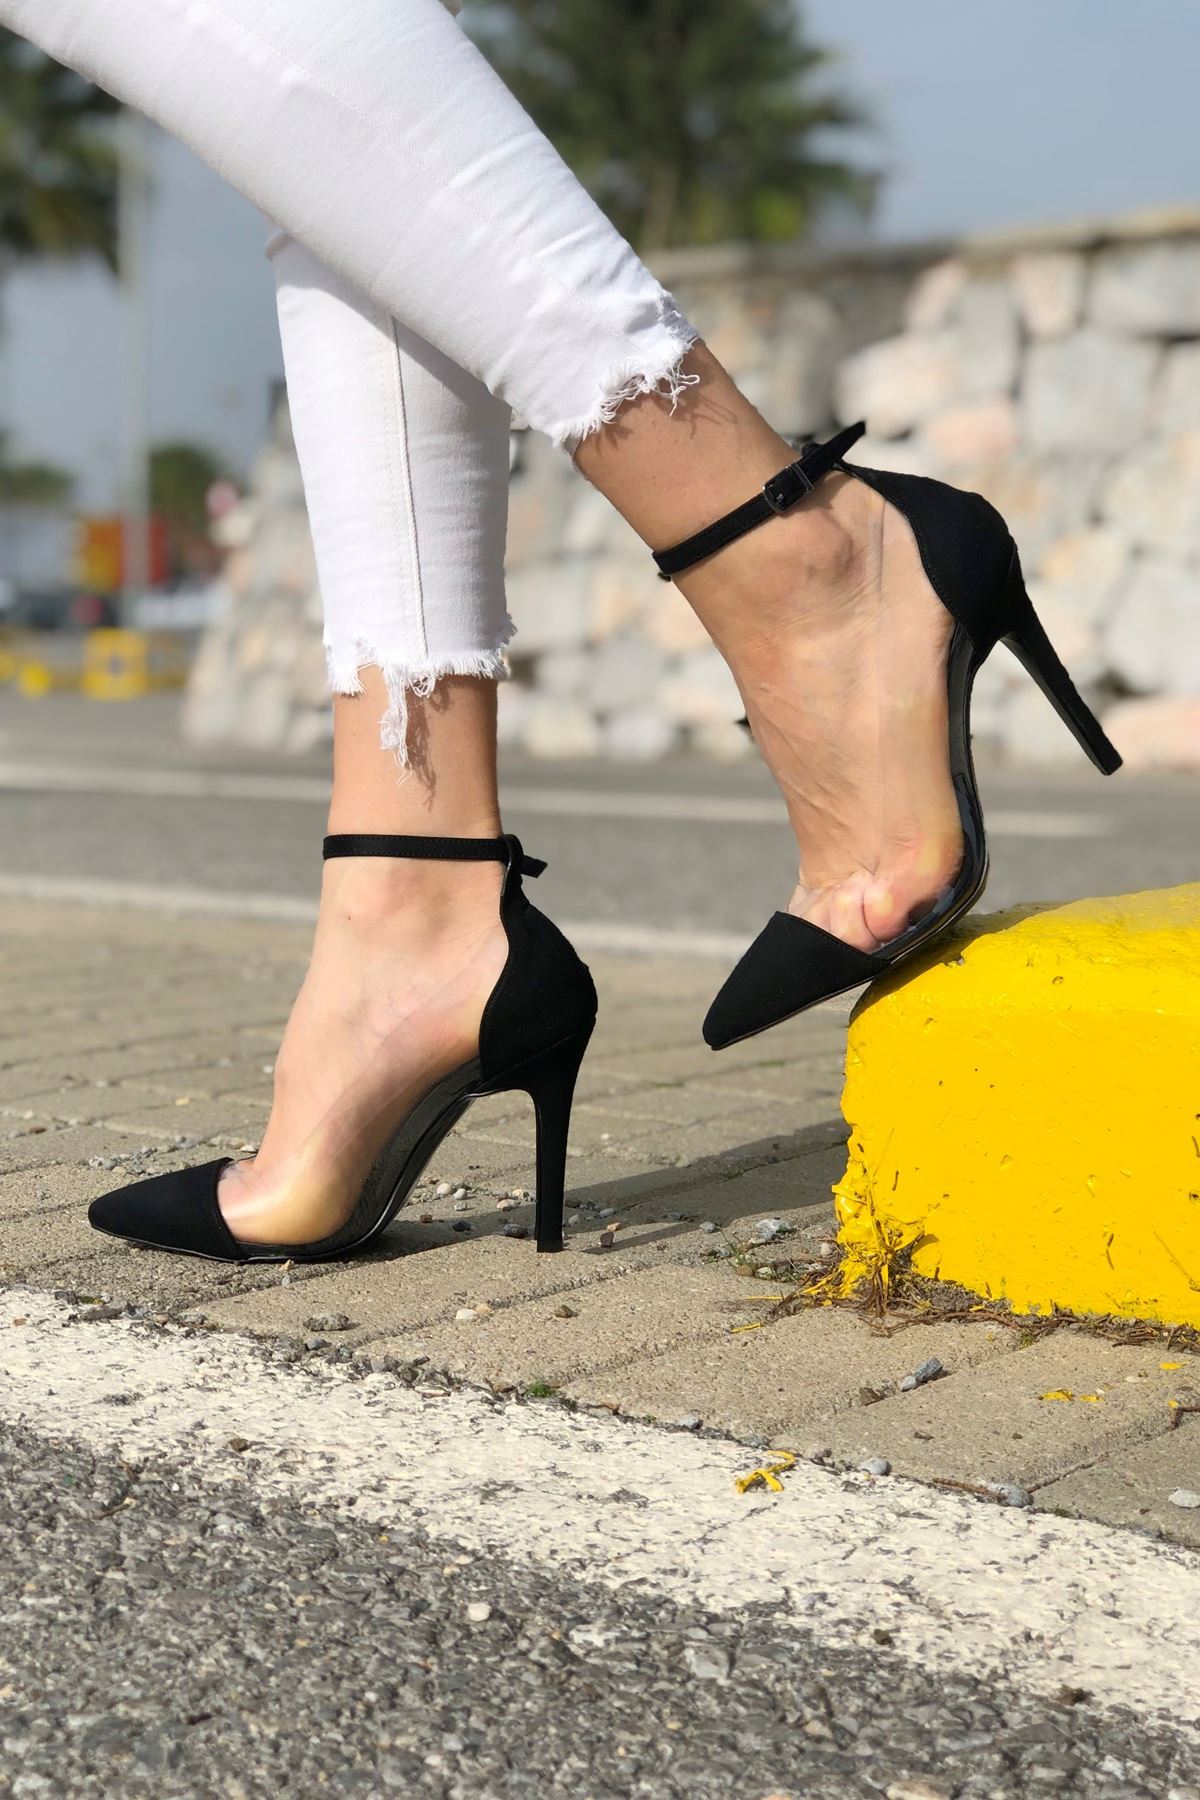 Fabien Siyah Süet Baretli  Topuklu Kadın Ayakkabı